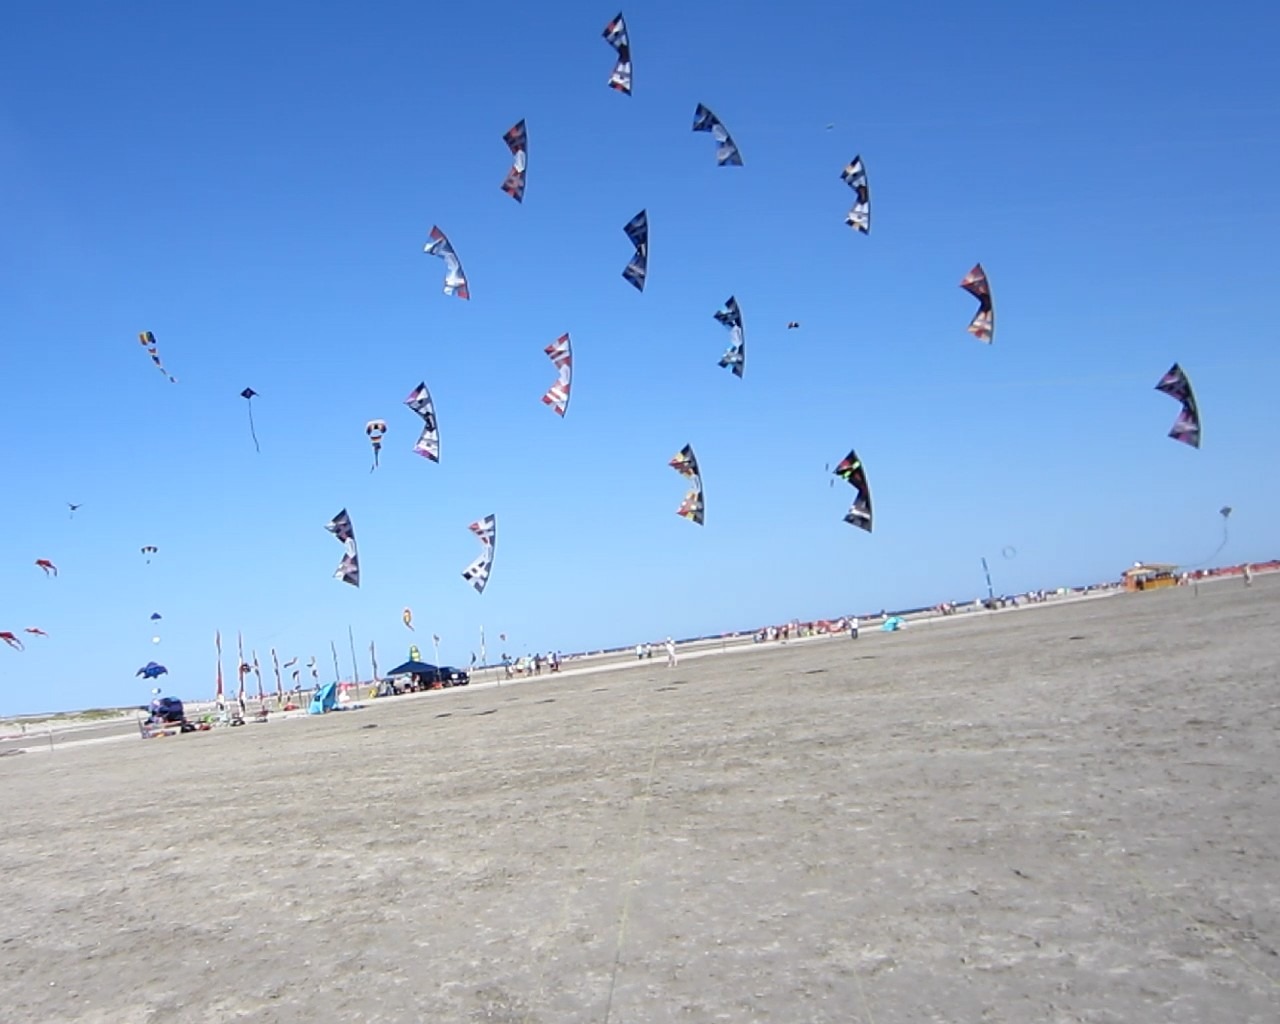 A kite event